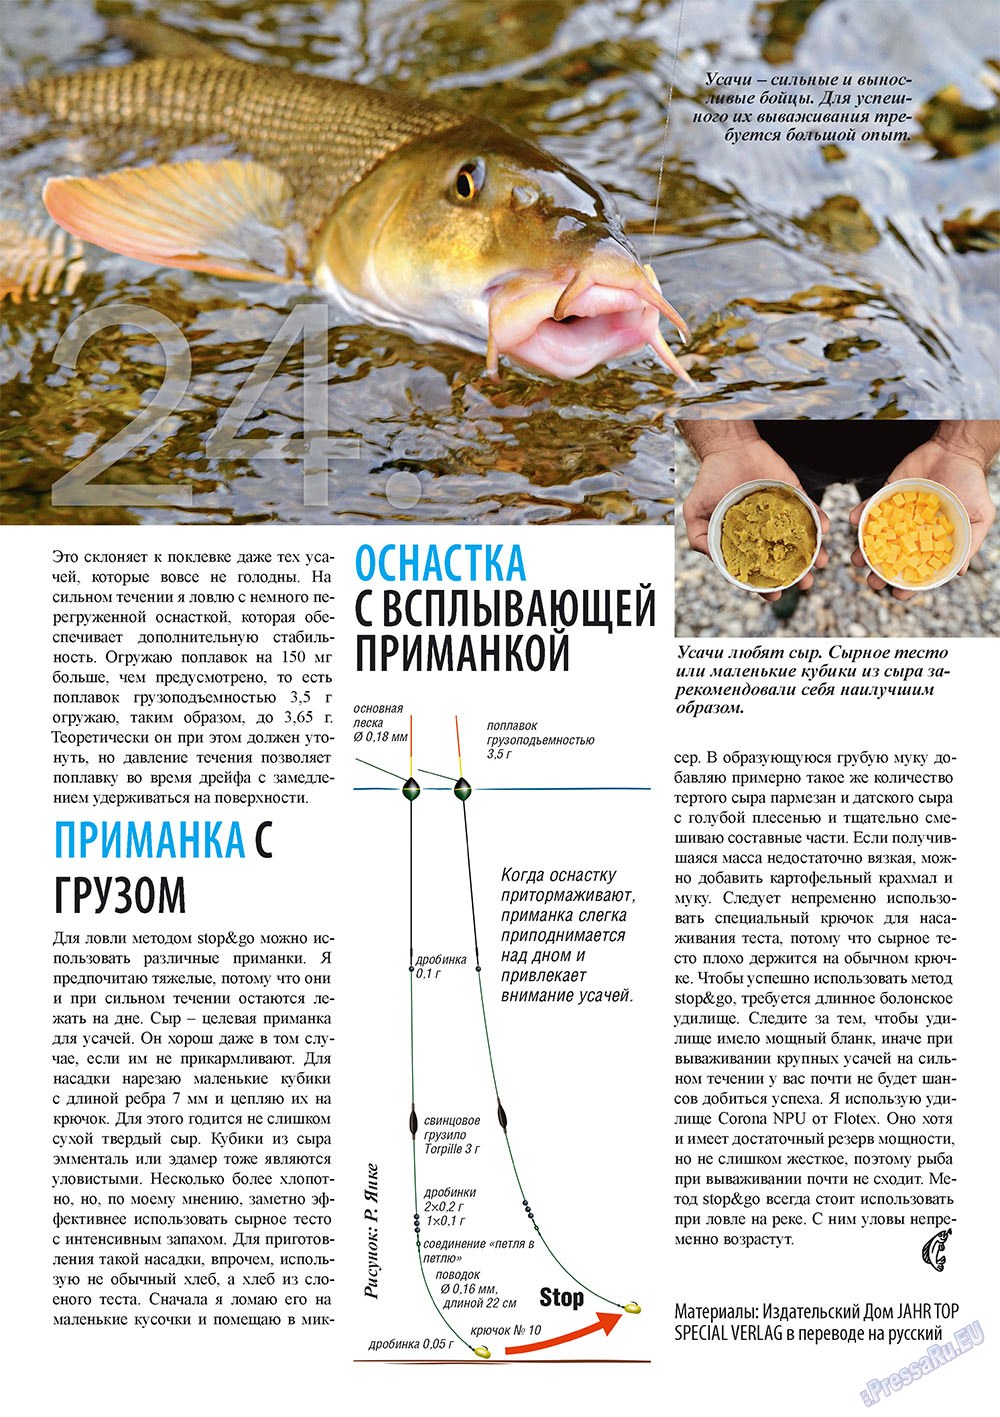 Рыбалка Plus, журнал. 2010 №6 стр.24